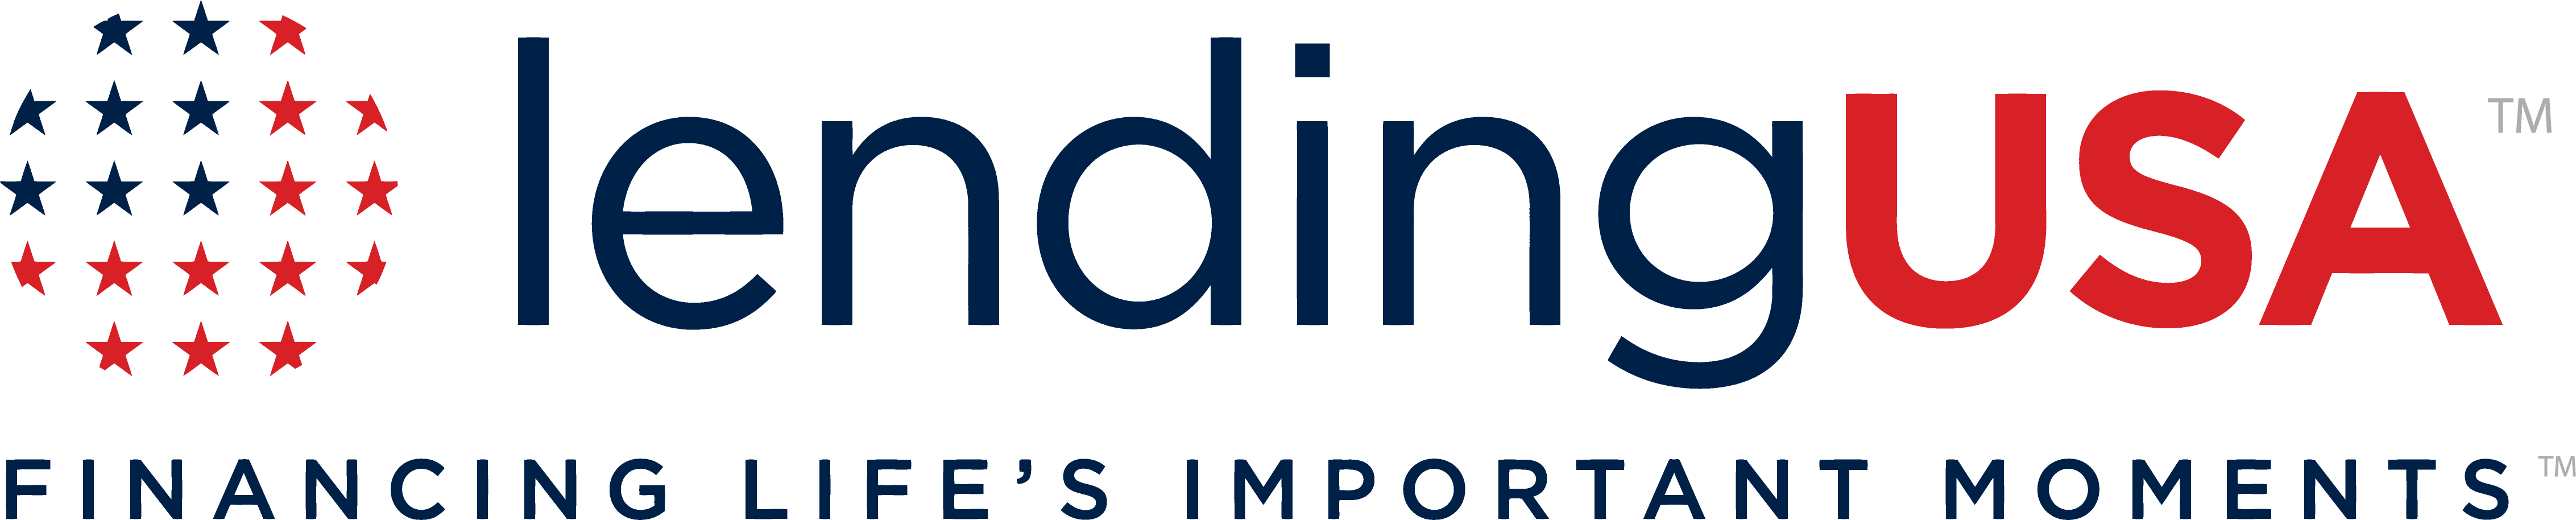 LendingUSA logo